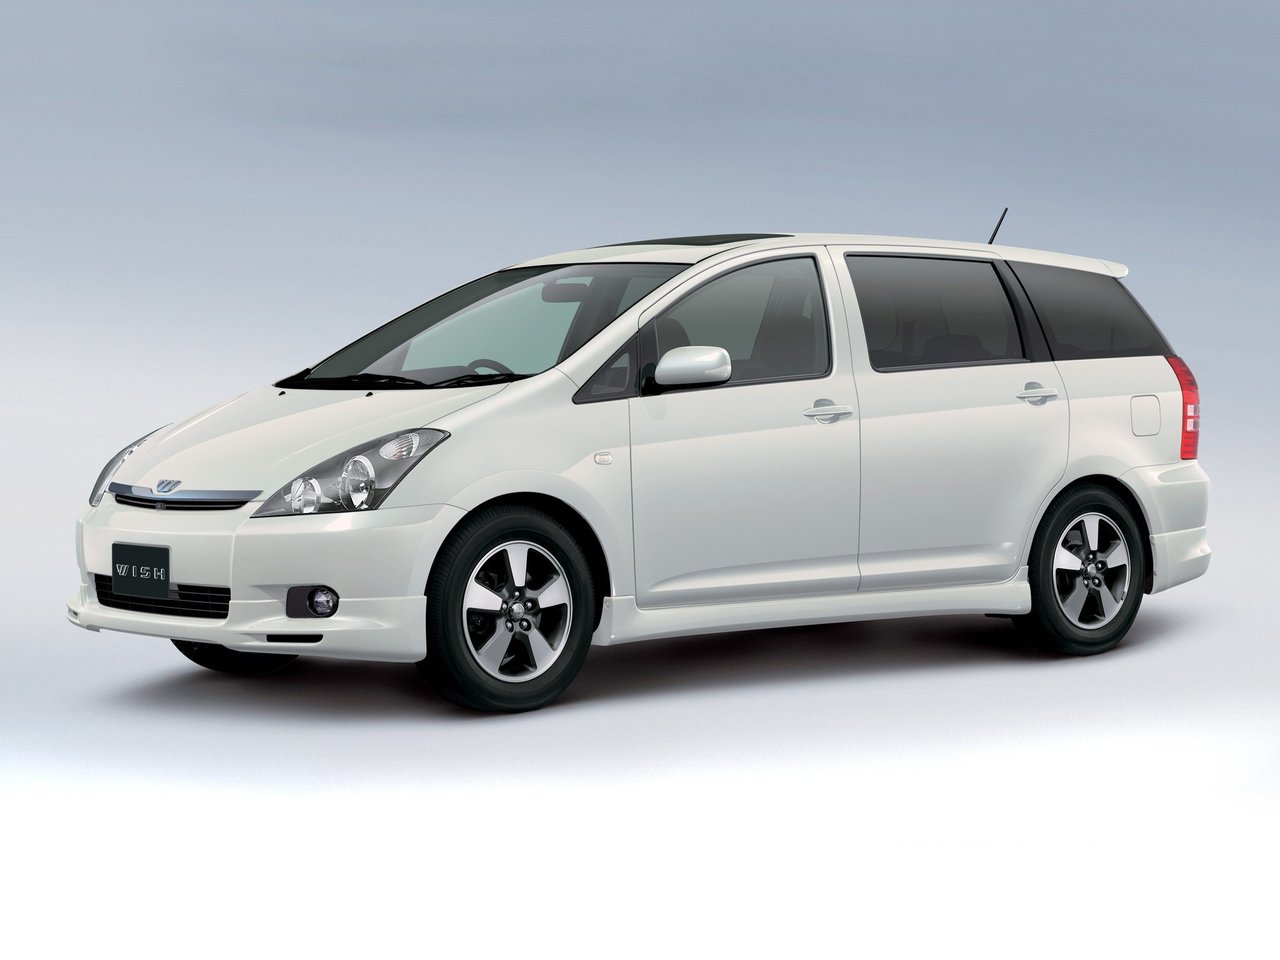 Снижаем расход Toyota Wish на топливо, устанавливаем ГБО